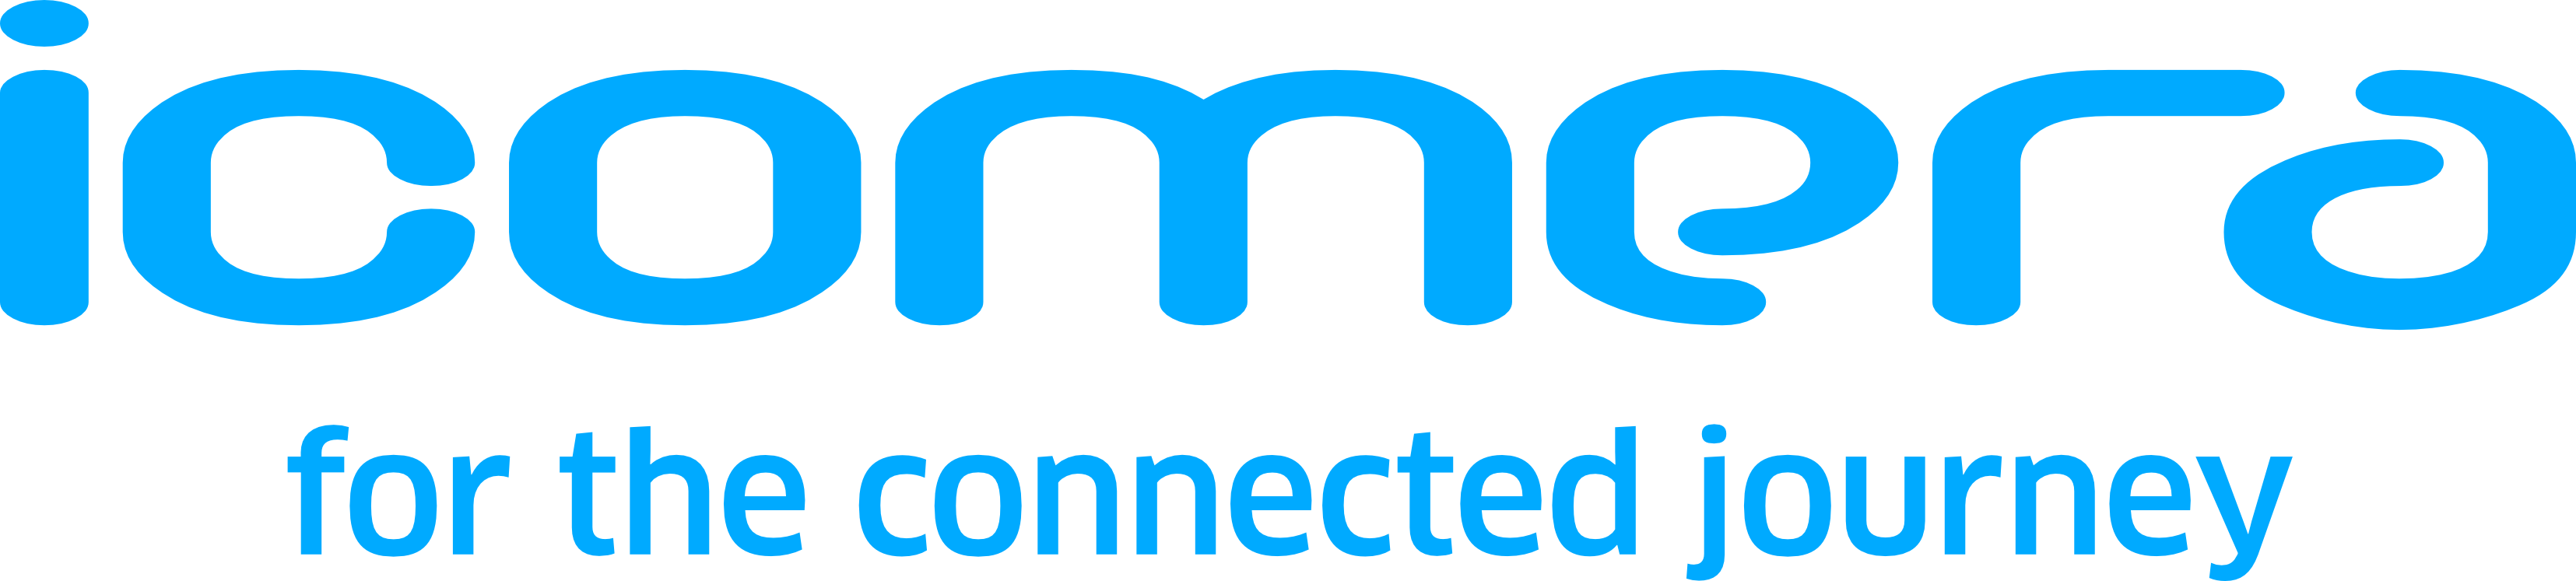 Icomera Company Logo